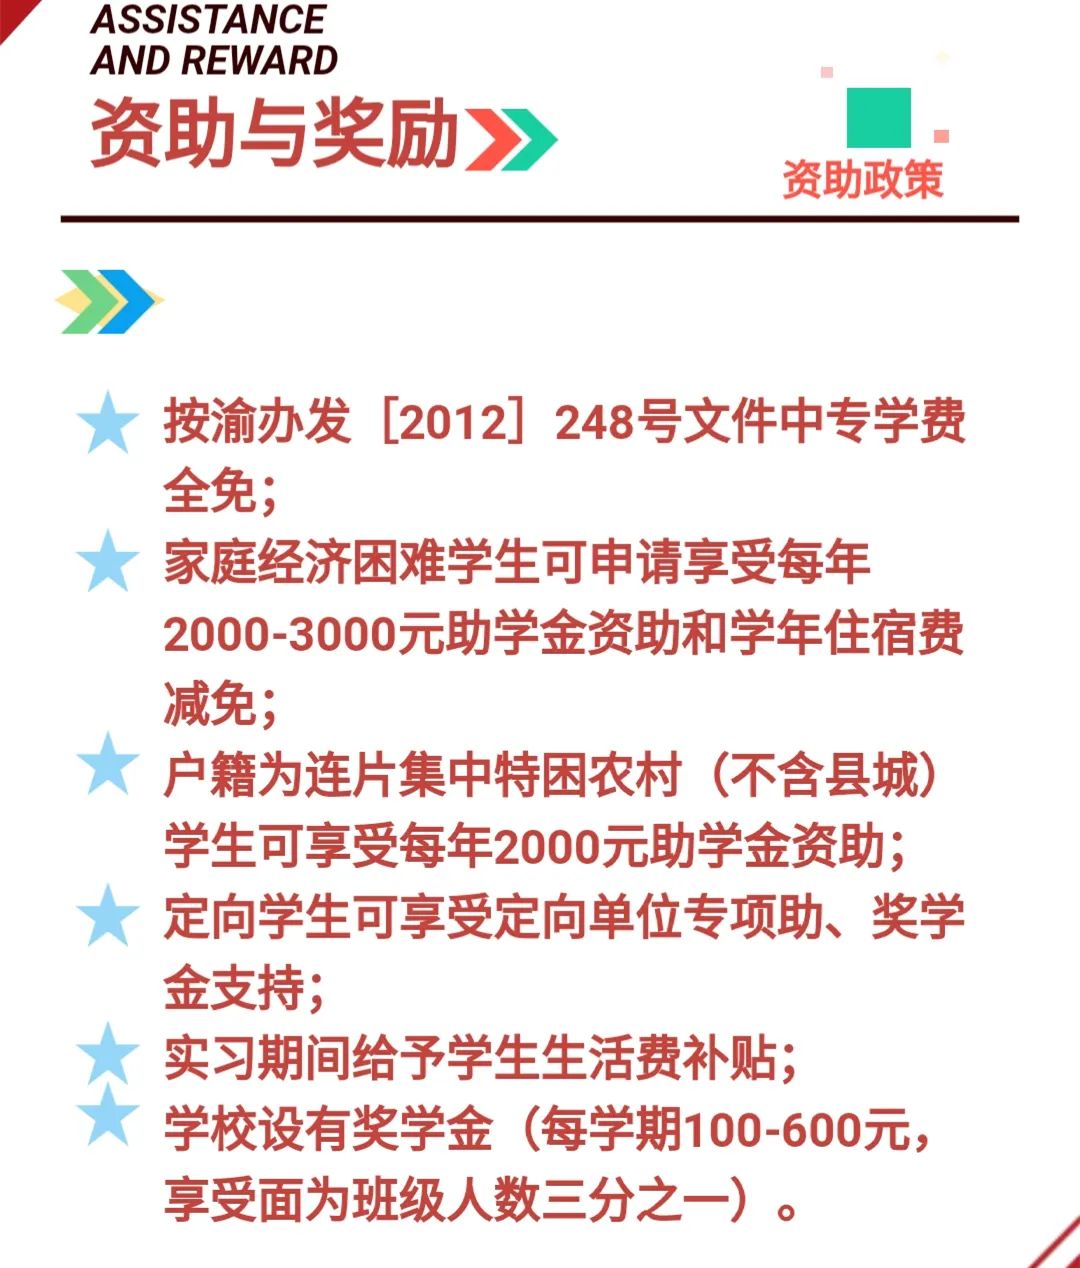 四川仪表工业学校2021年招生简章 - 职教网